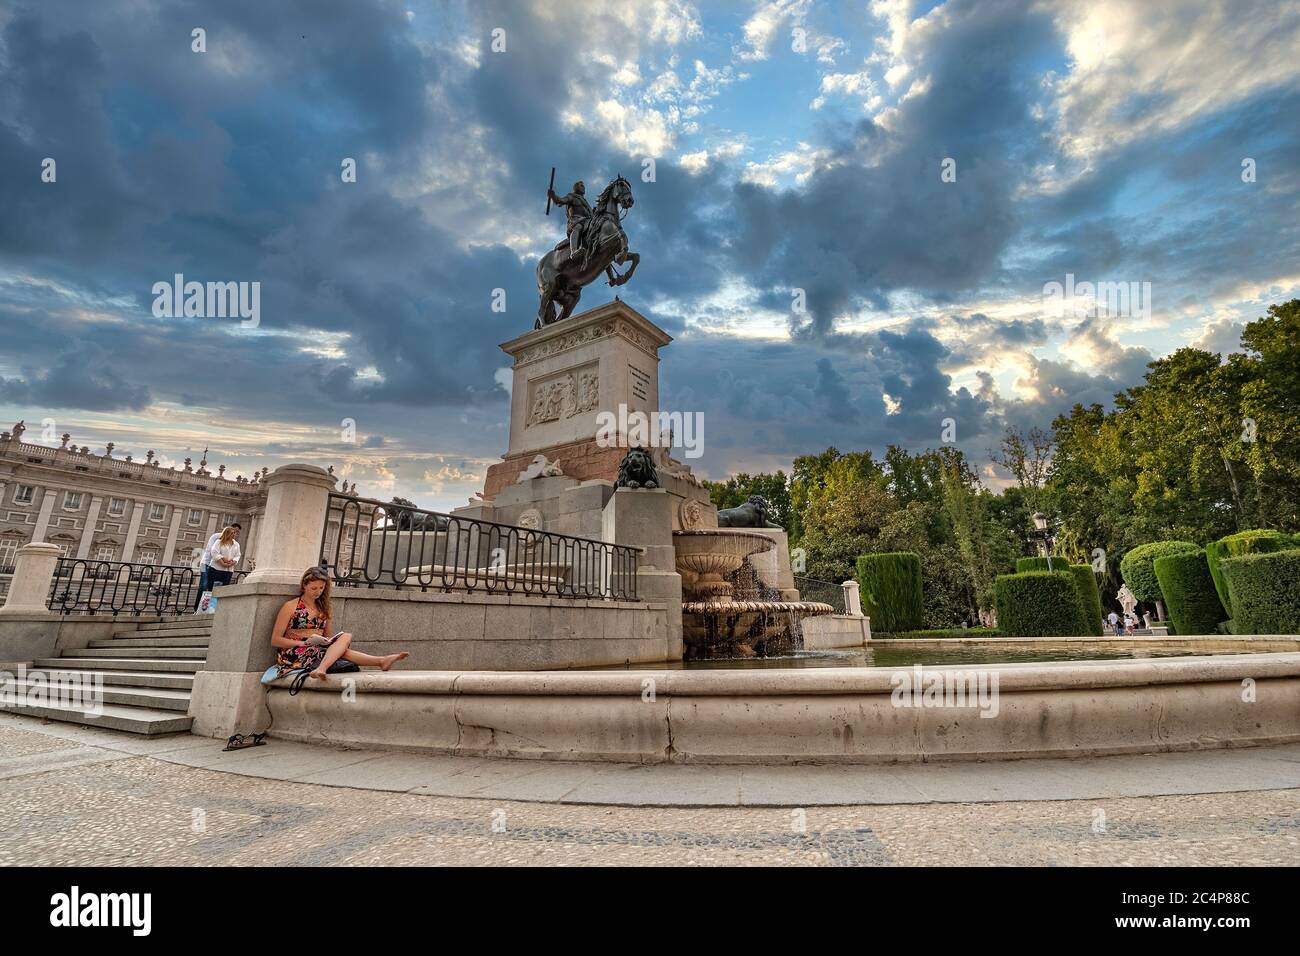 MADRID, SPANIEN - 2018. AUGUST 22. Reiterstatue des Königs Philipp IV. Auf einem Brunnen. Frau liest ein Buch Stockfoto